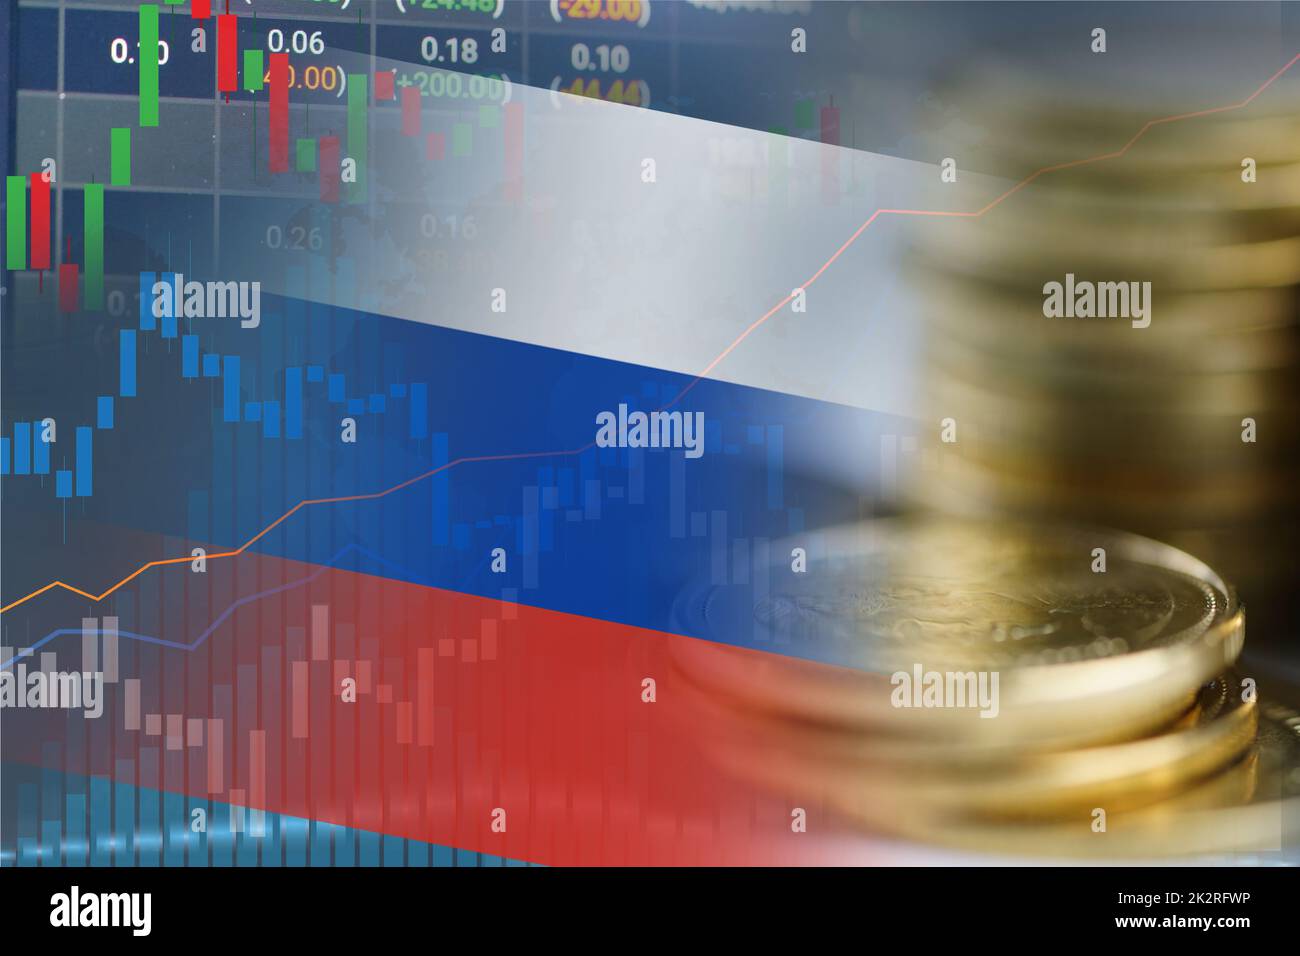 Bourse investissement trading financier, de la monnaie et de Russie drapeau ou Forex pour analyser le financement de bénéfice tendances d'affaires fond de données. Banque D'Images